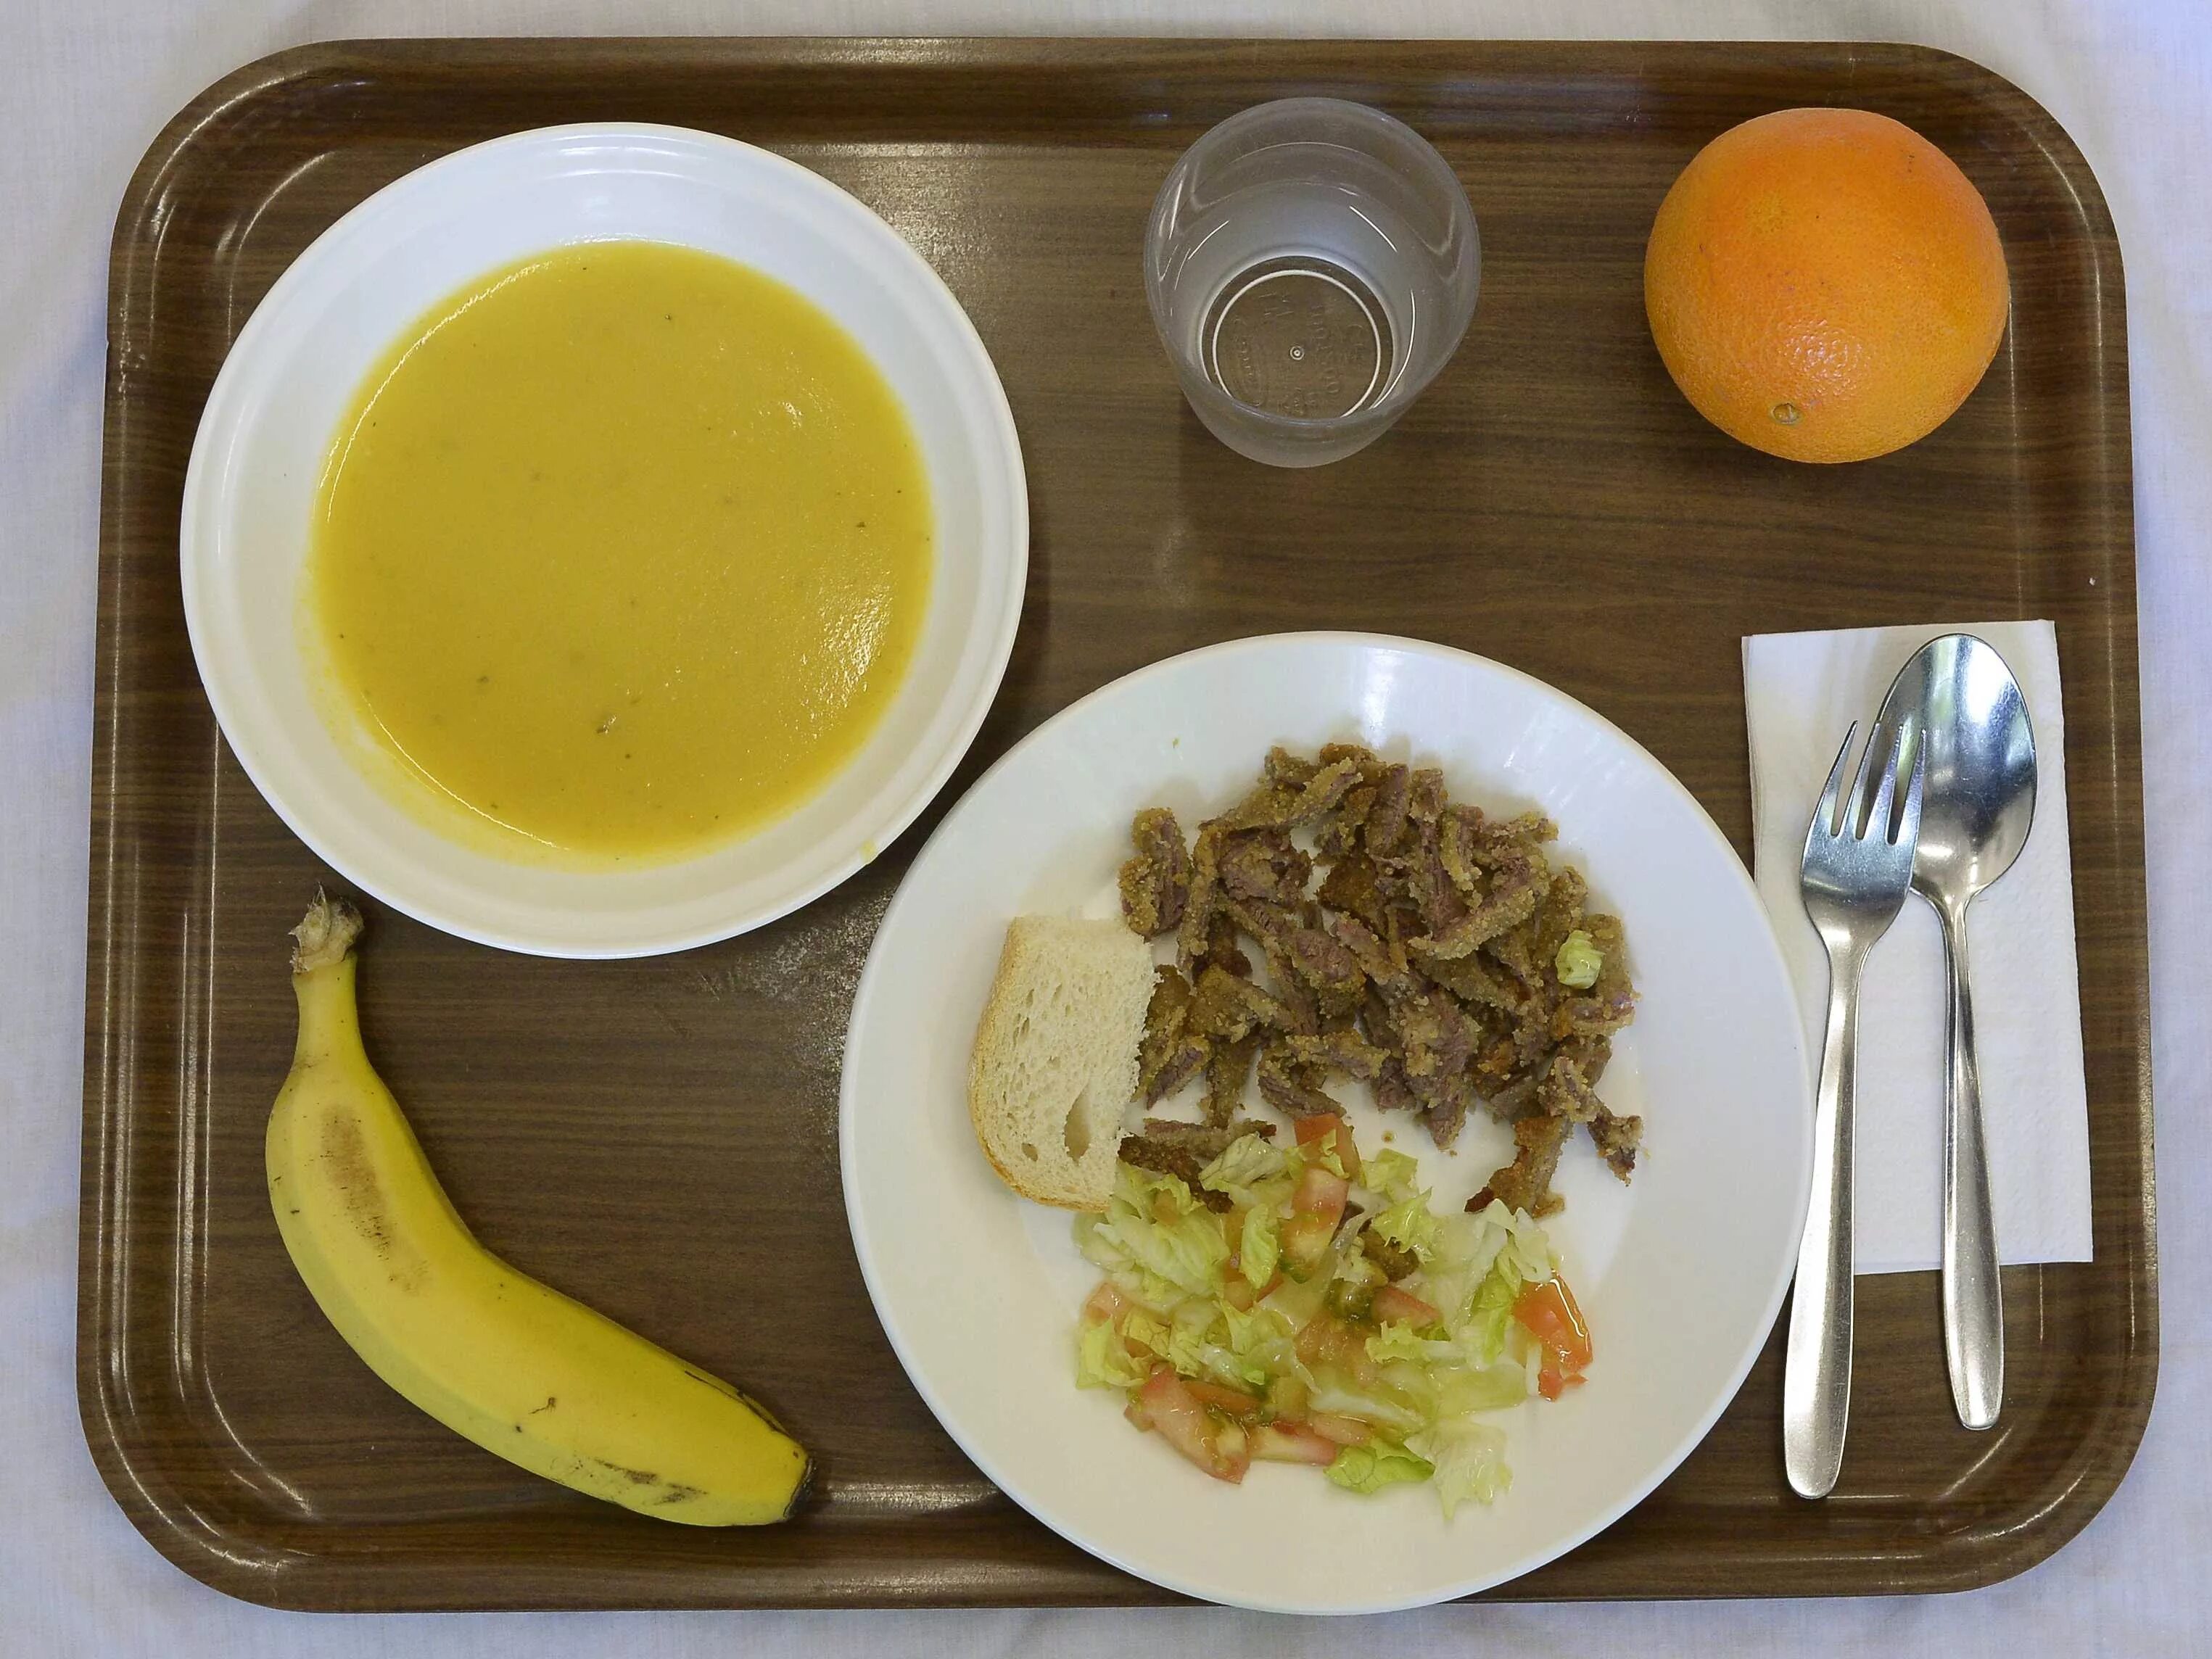 Обеды завтраки в школе. Школьная еда. Школьный обед. Обеды в школьных столовых. Обед в школьной столовой.